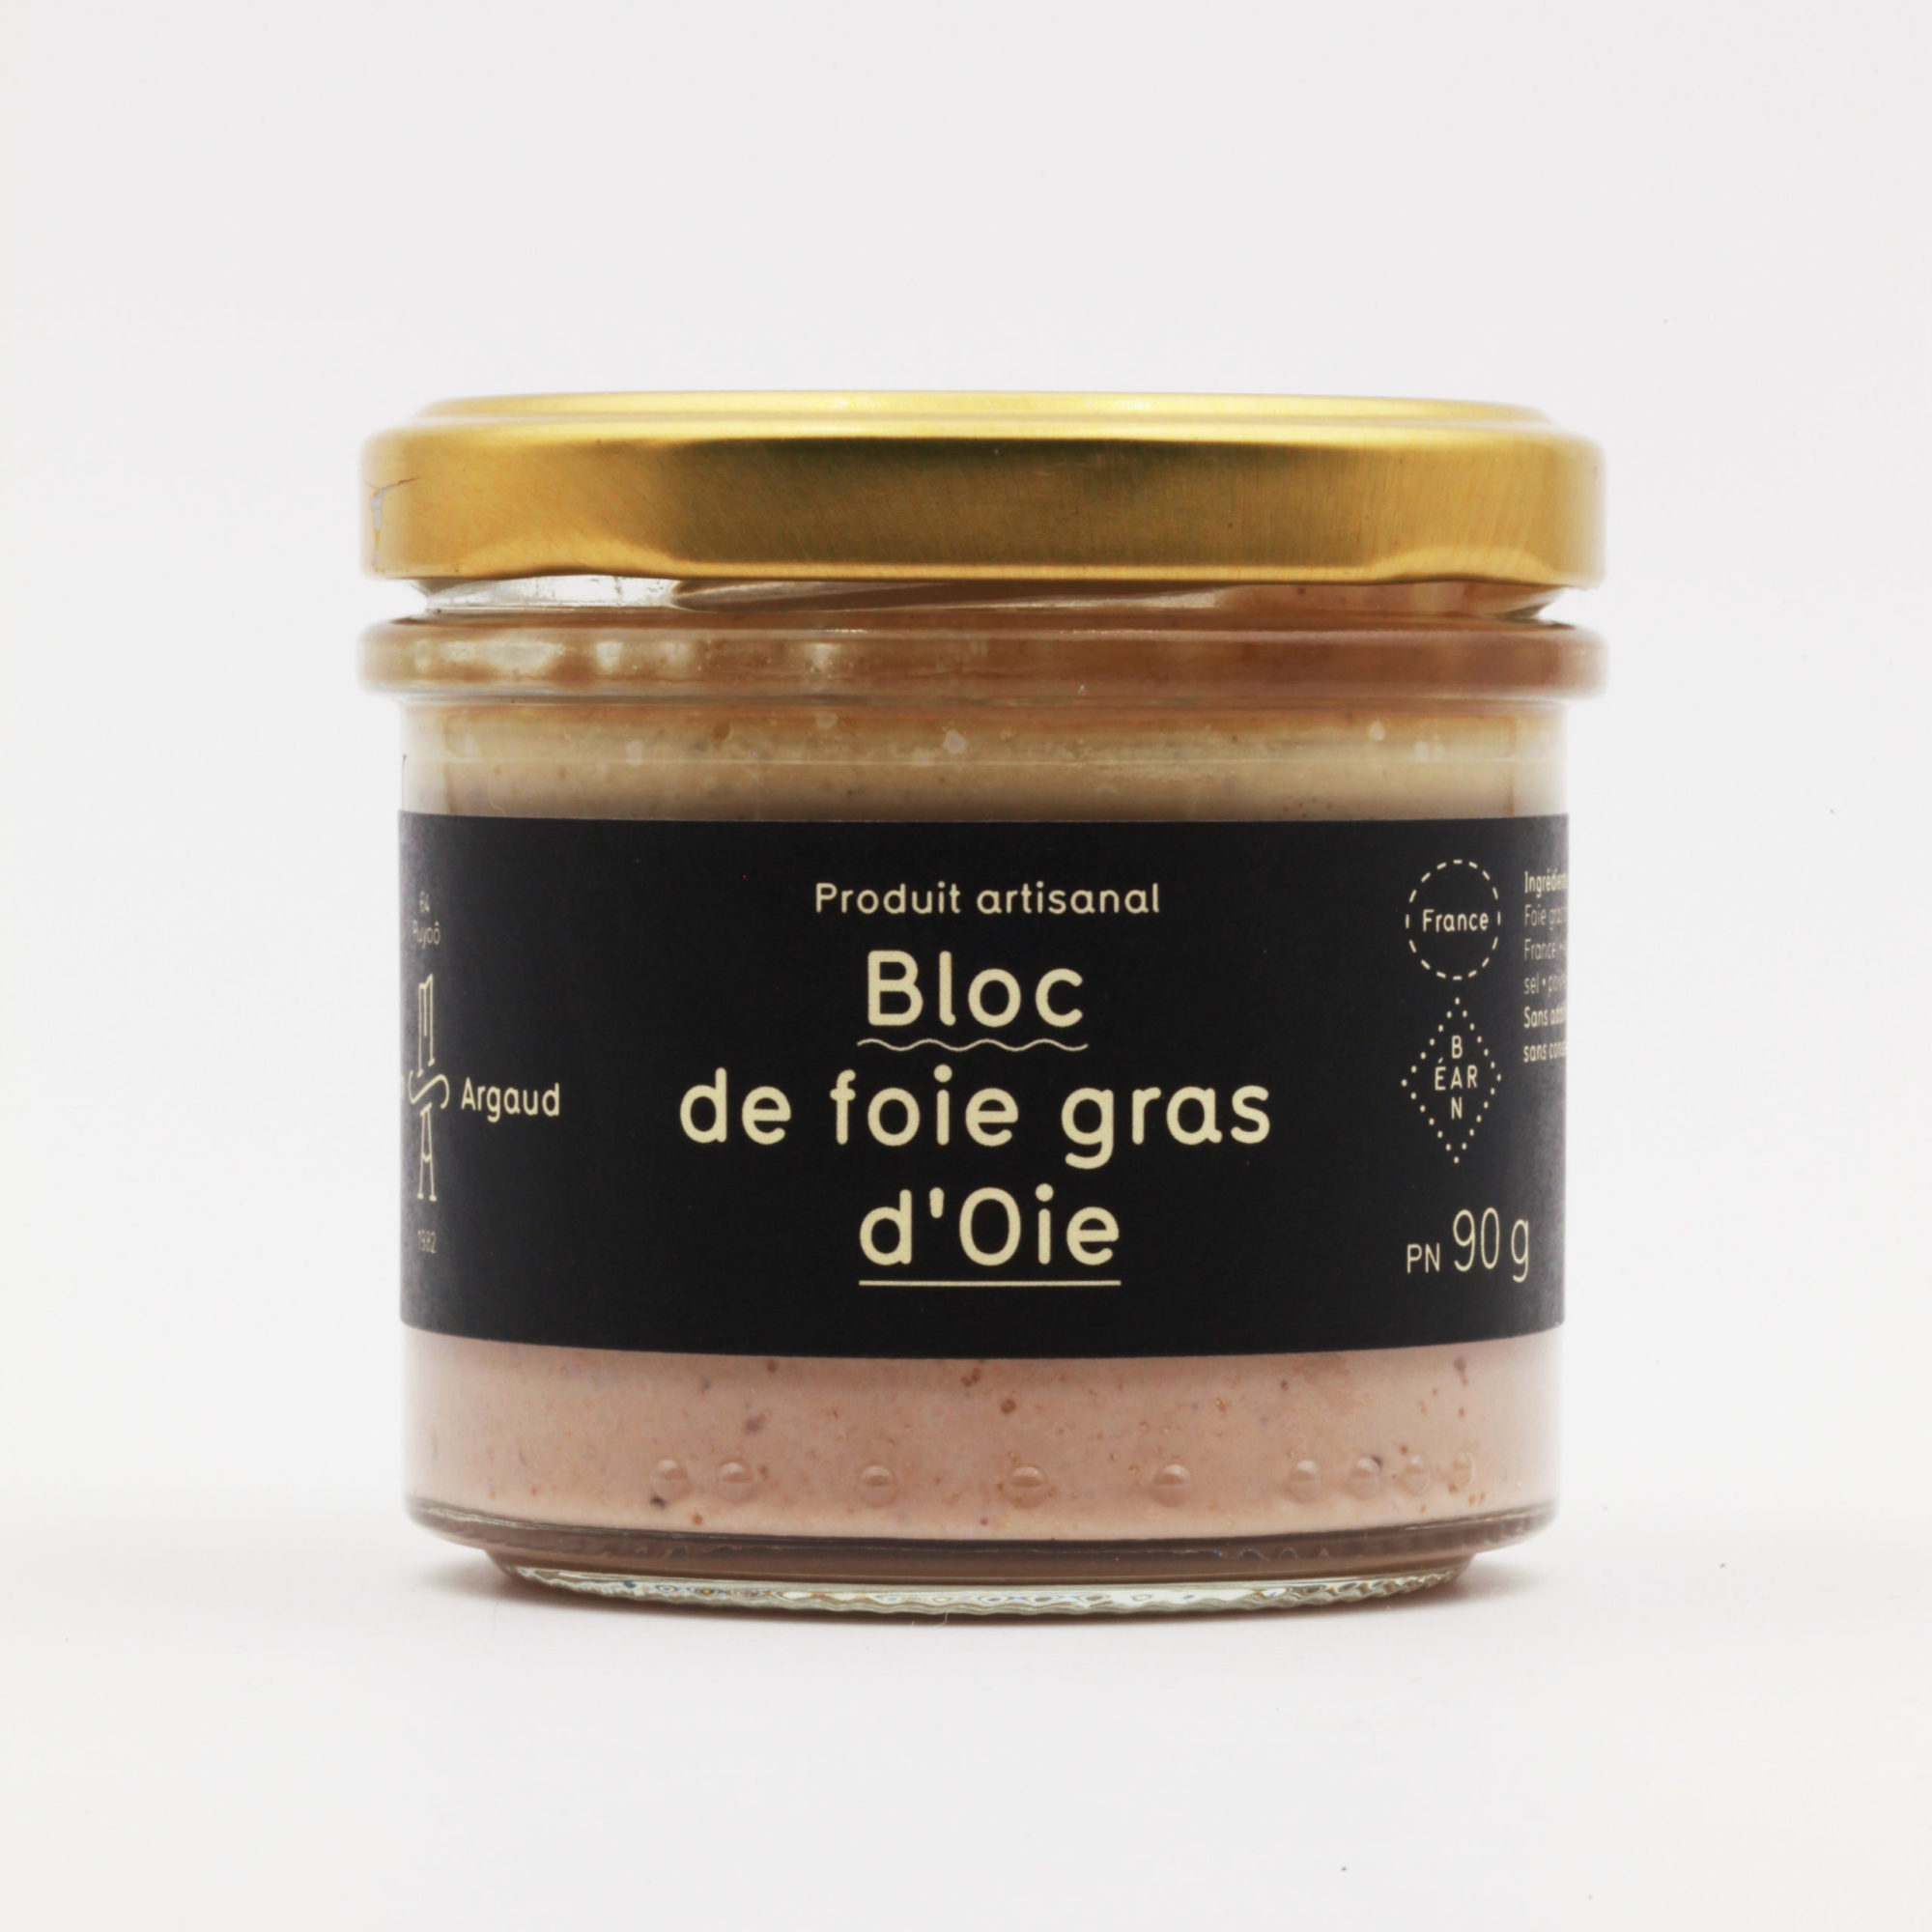 Bloc de foie gras d'Oie